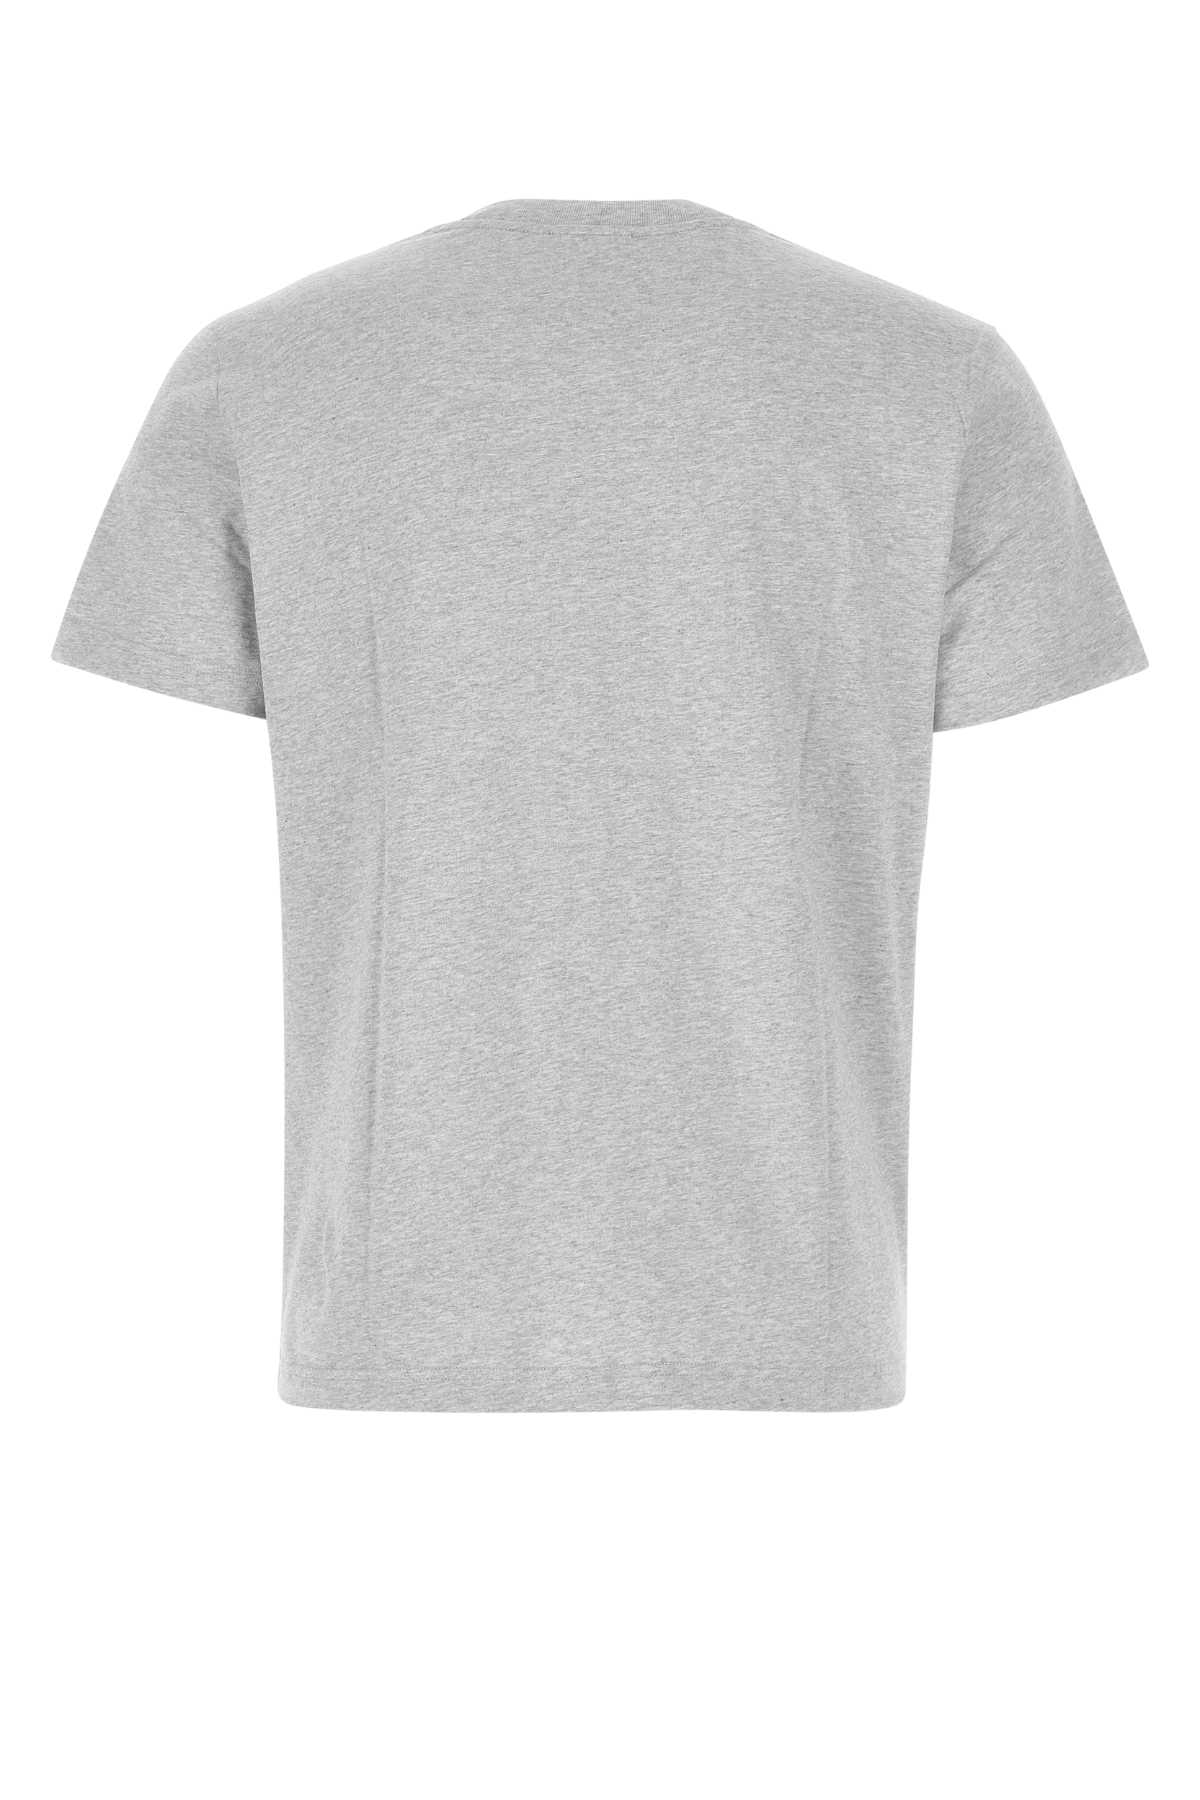 Shop Apc Melange Grey Cotton T-shirt